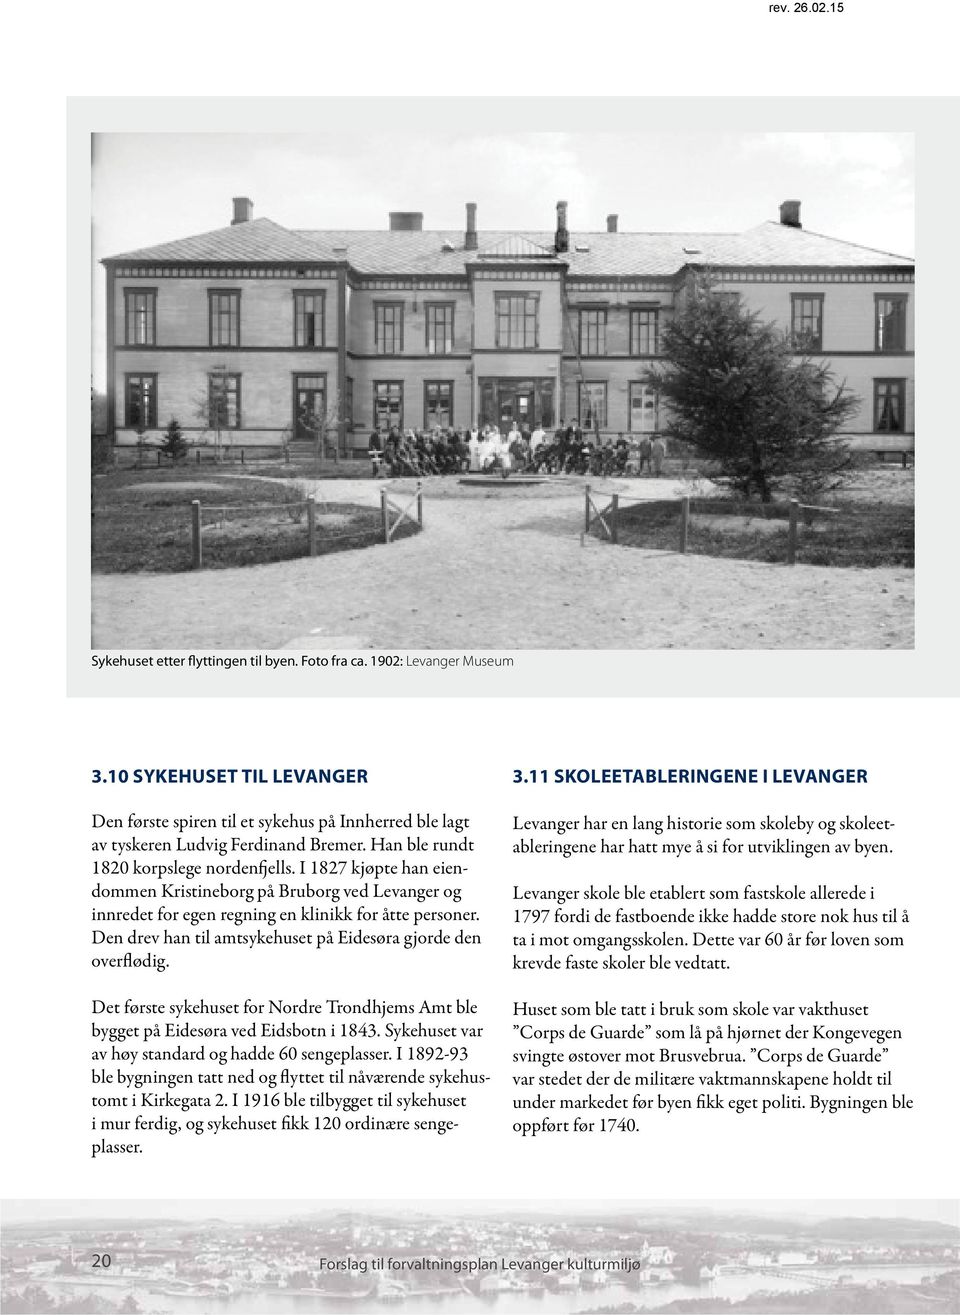 Den drev han til amtsykehuset på Eidesøra gjorde den overflødig. Det første sykehuset for Nordre Trondhjems Amt ble bygget på Eidesøra ved Eidsbotn i 1843.